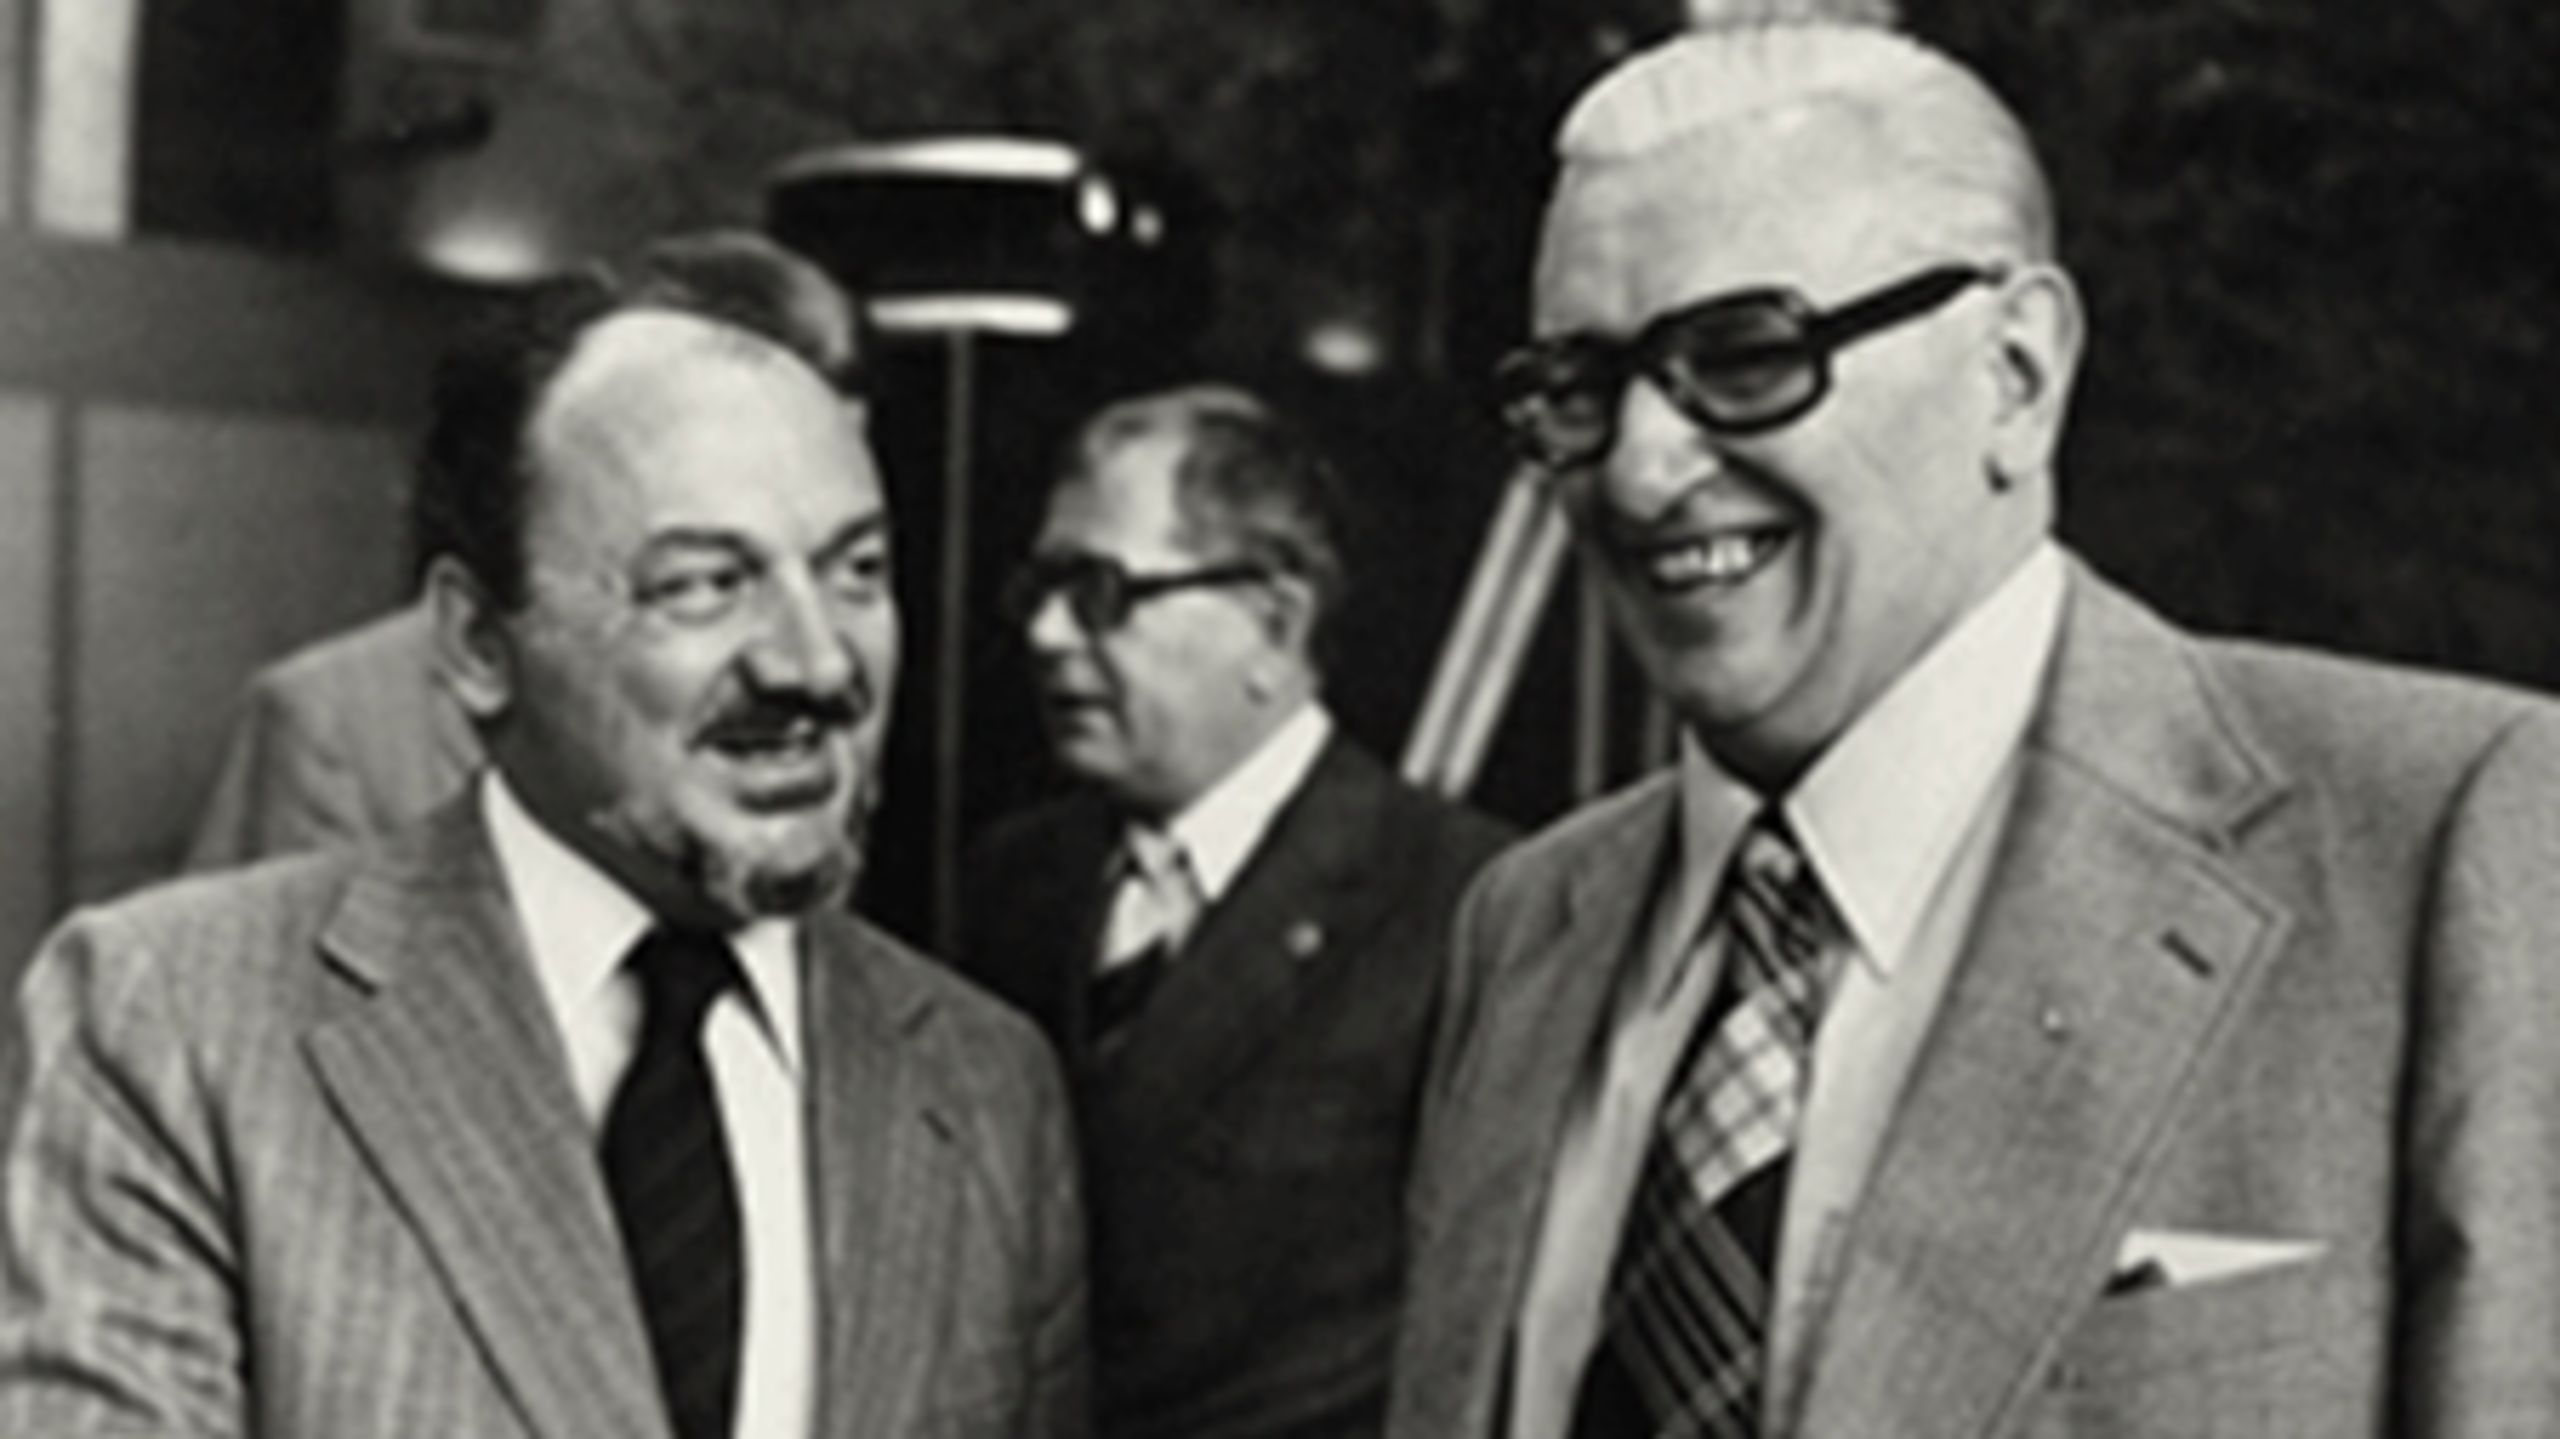 Statsminister Anker J&#248;rgensen (S) og LO-formand Thomas Nielsen var begge optagede af &#216;konomisk Demokrati, men SF's hovedbestyrelse vendte tomlen ned i 1979.